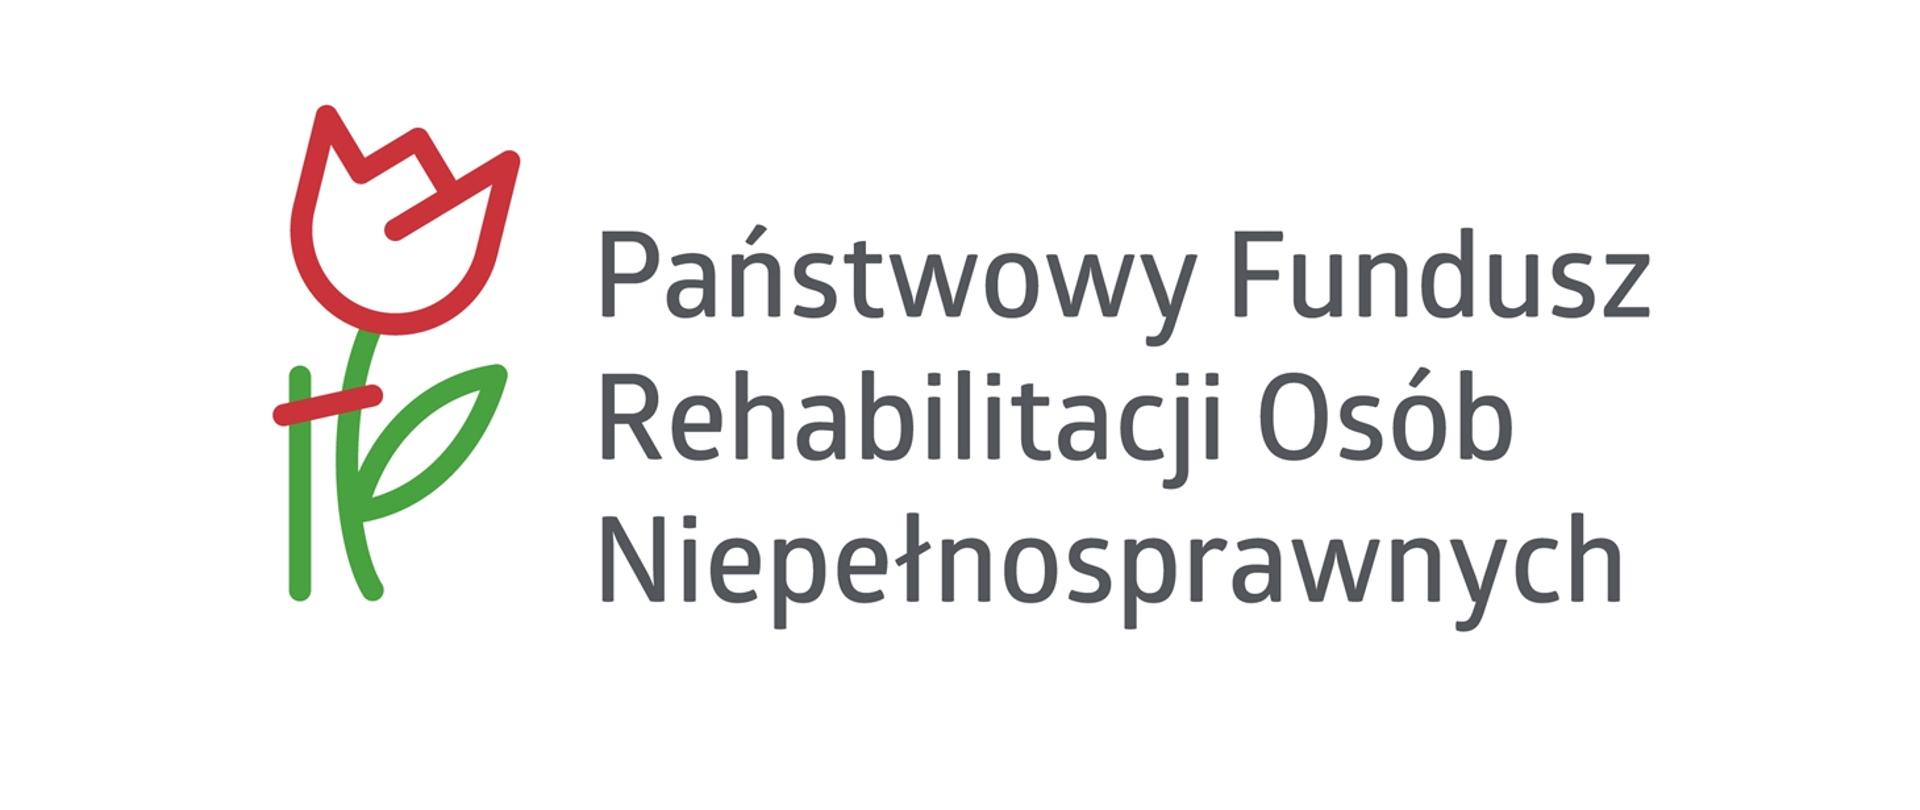 Logo Państwowego Funduszu Rehabilitacji Osób Niepełnosprawnych, składające się z stylizowanego czerwonego i zielonego kwiatu oraz czarnego tekstu